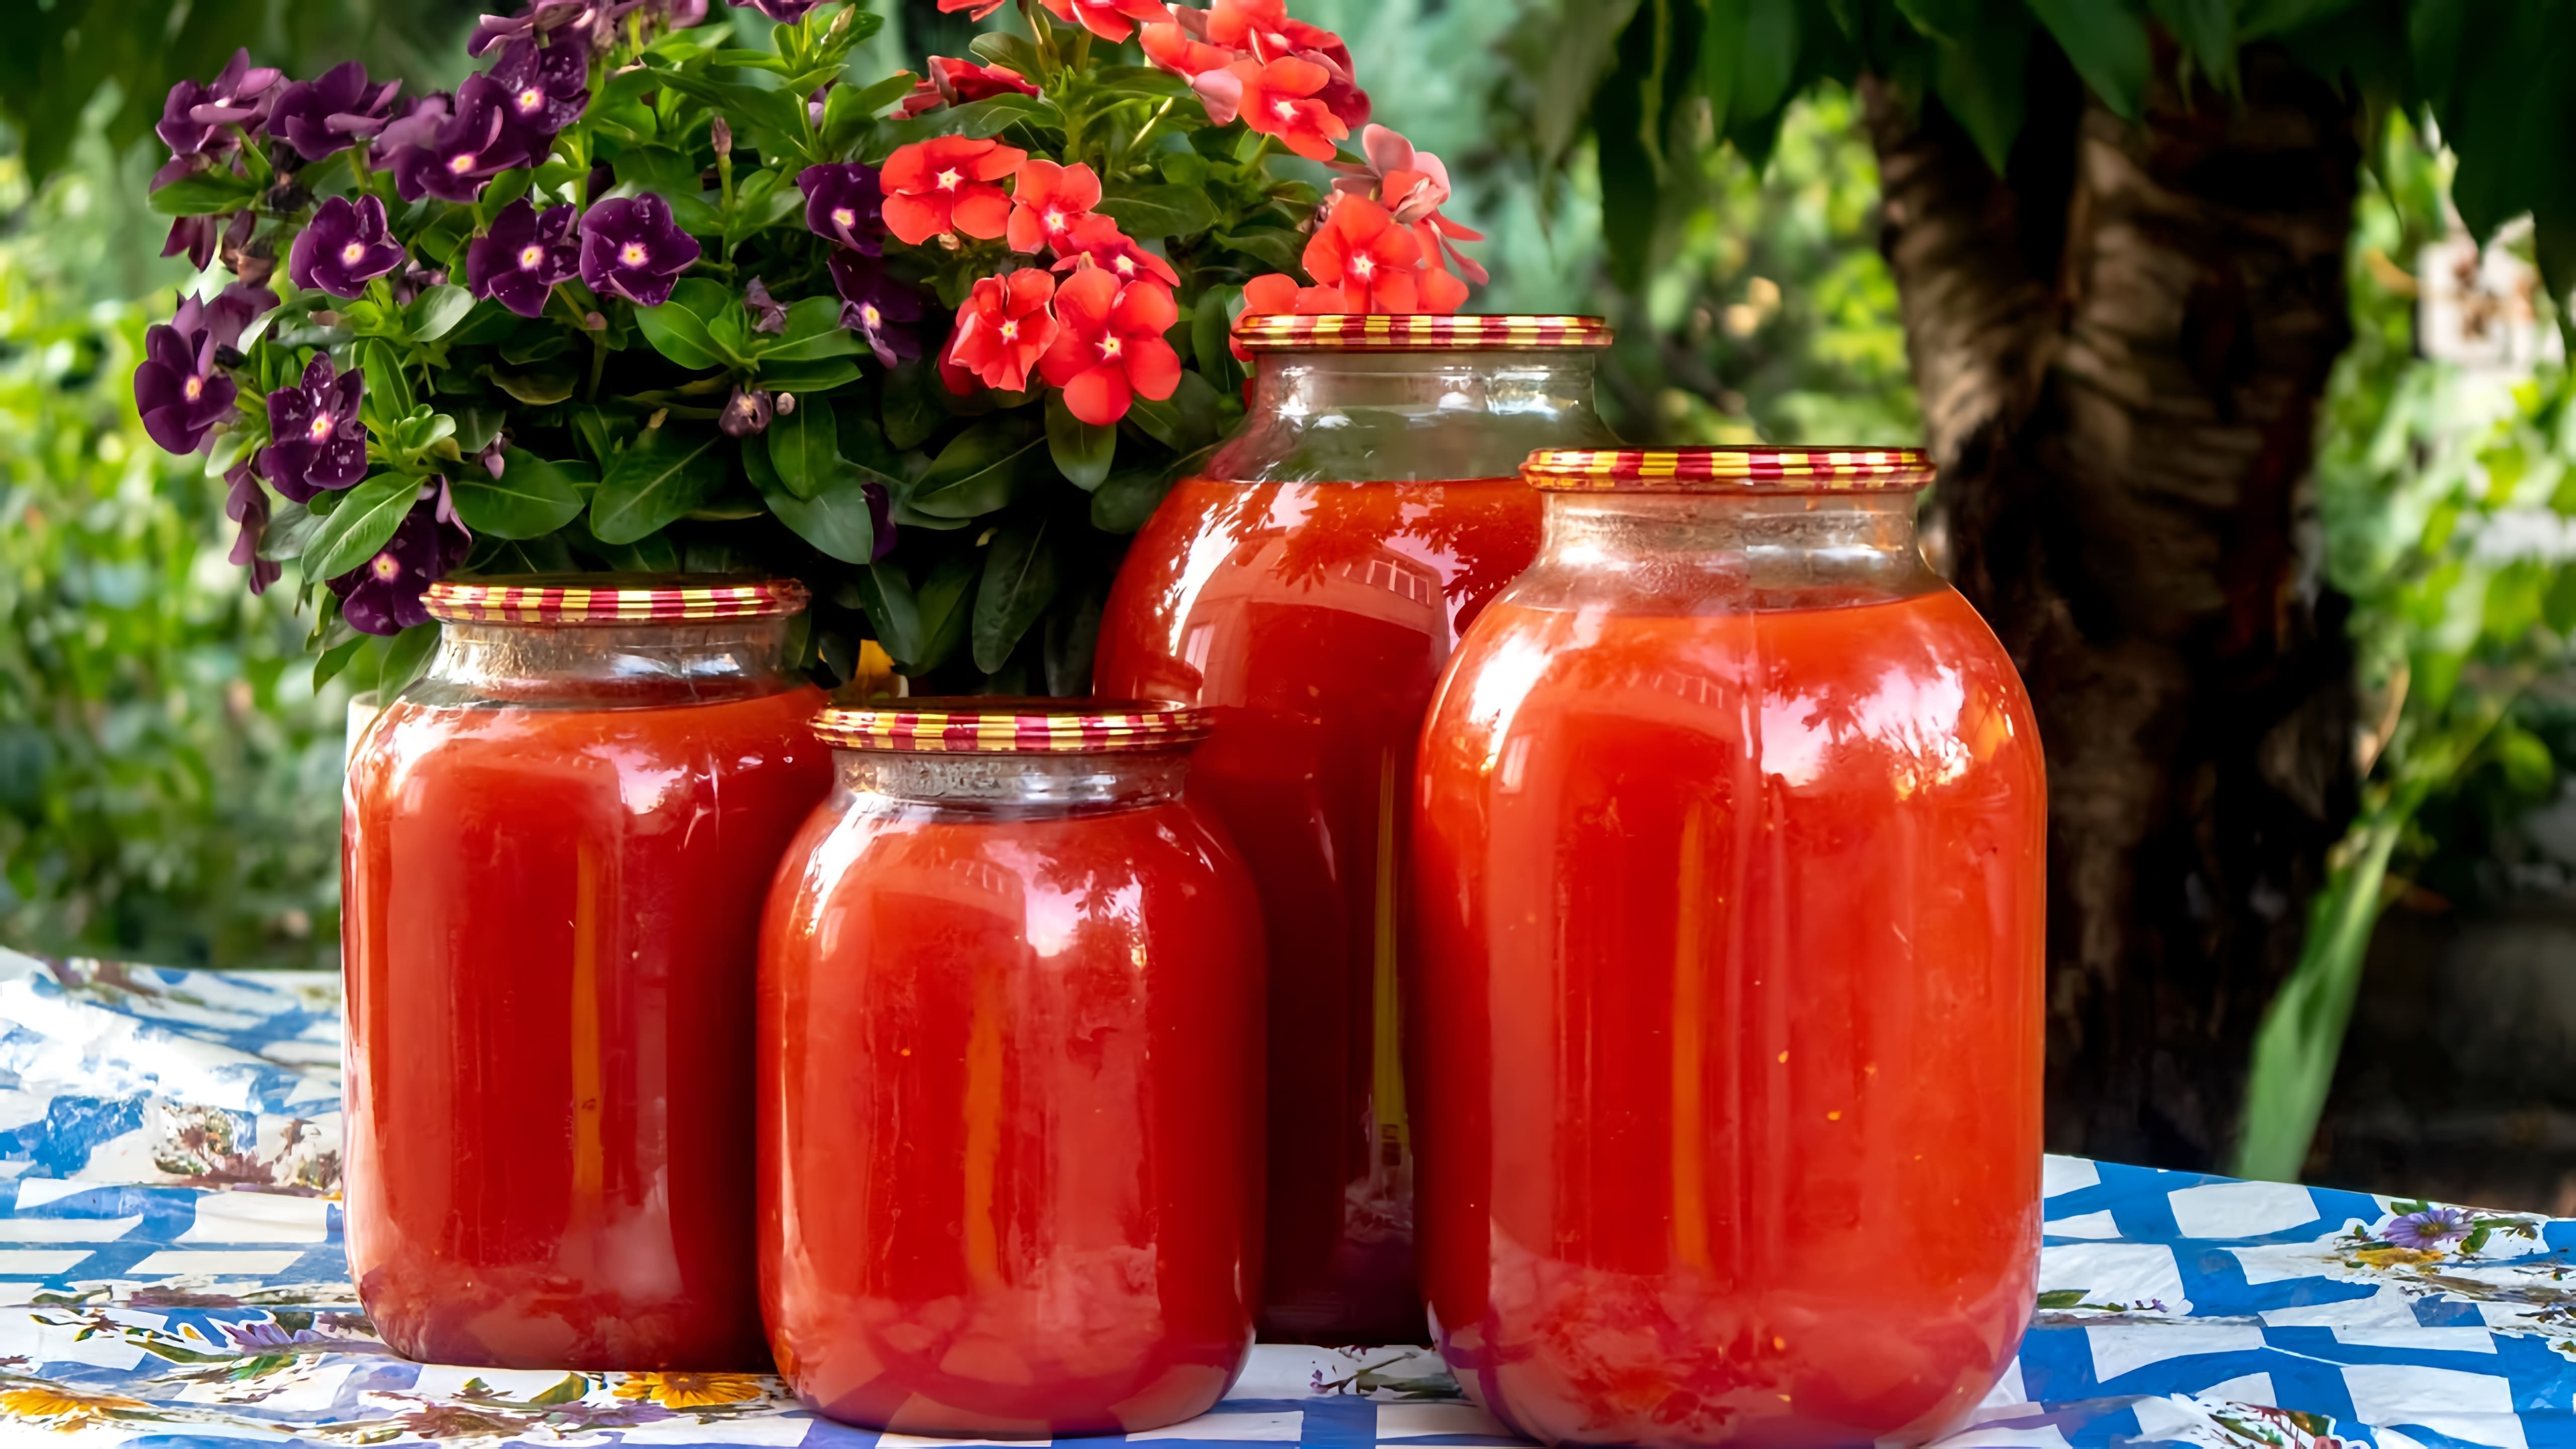 Видео посвящено приготовлению домашнего томатного сока/соуса